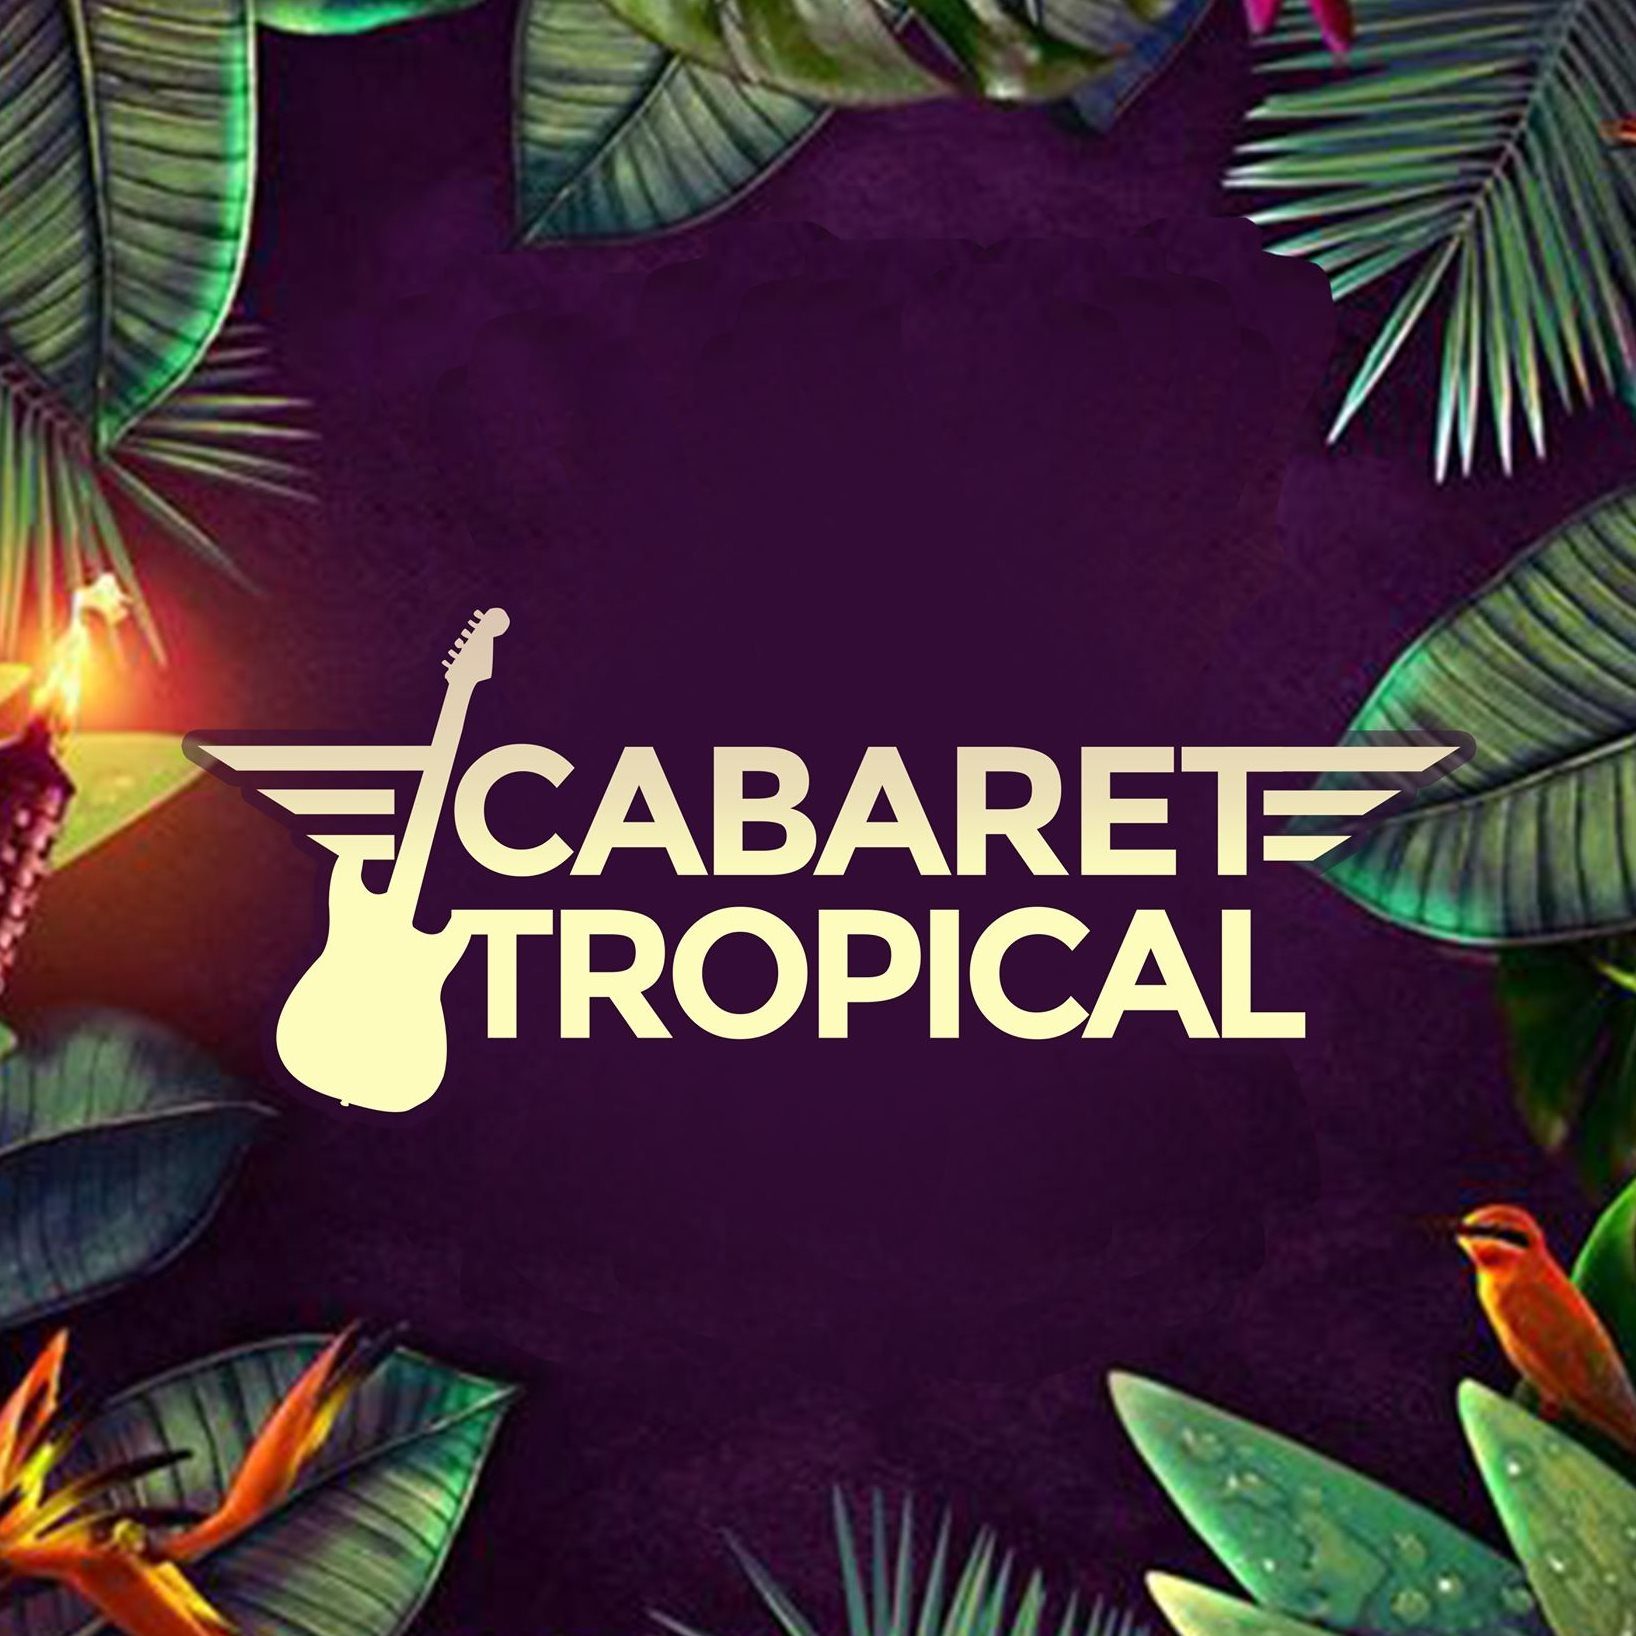 Cabaret Tropical Rouen